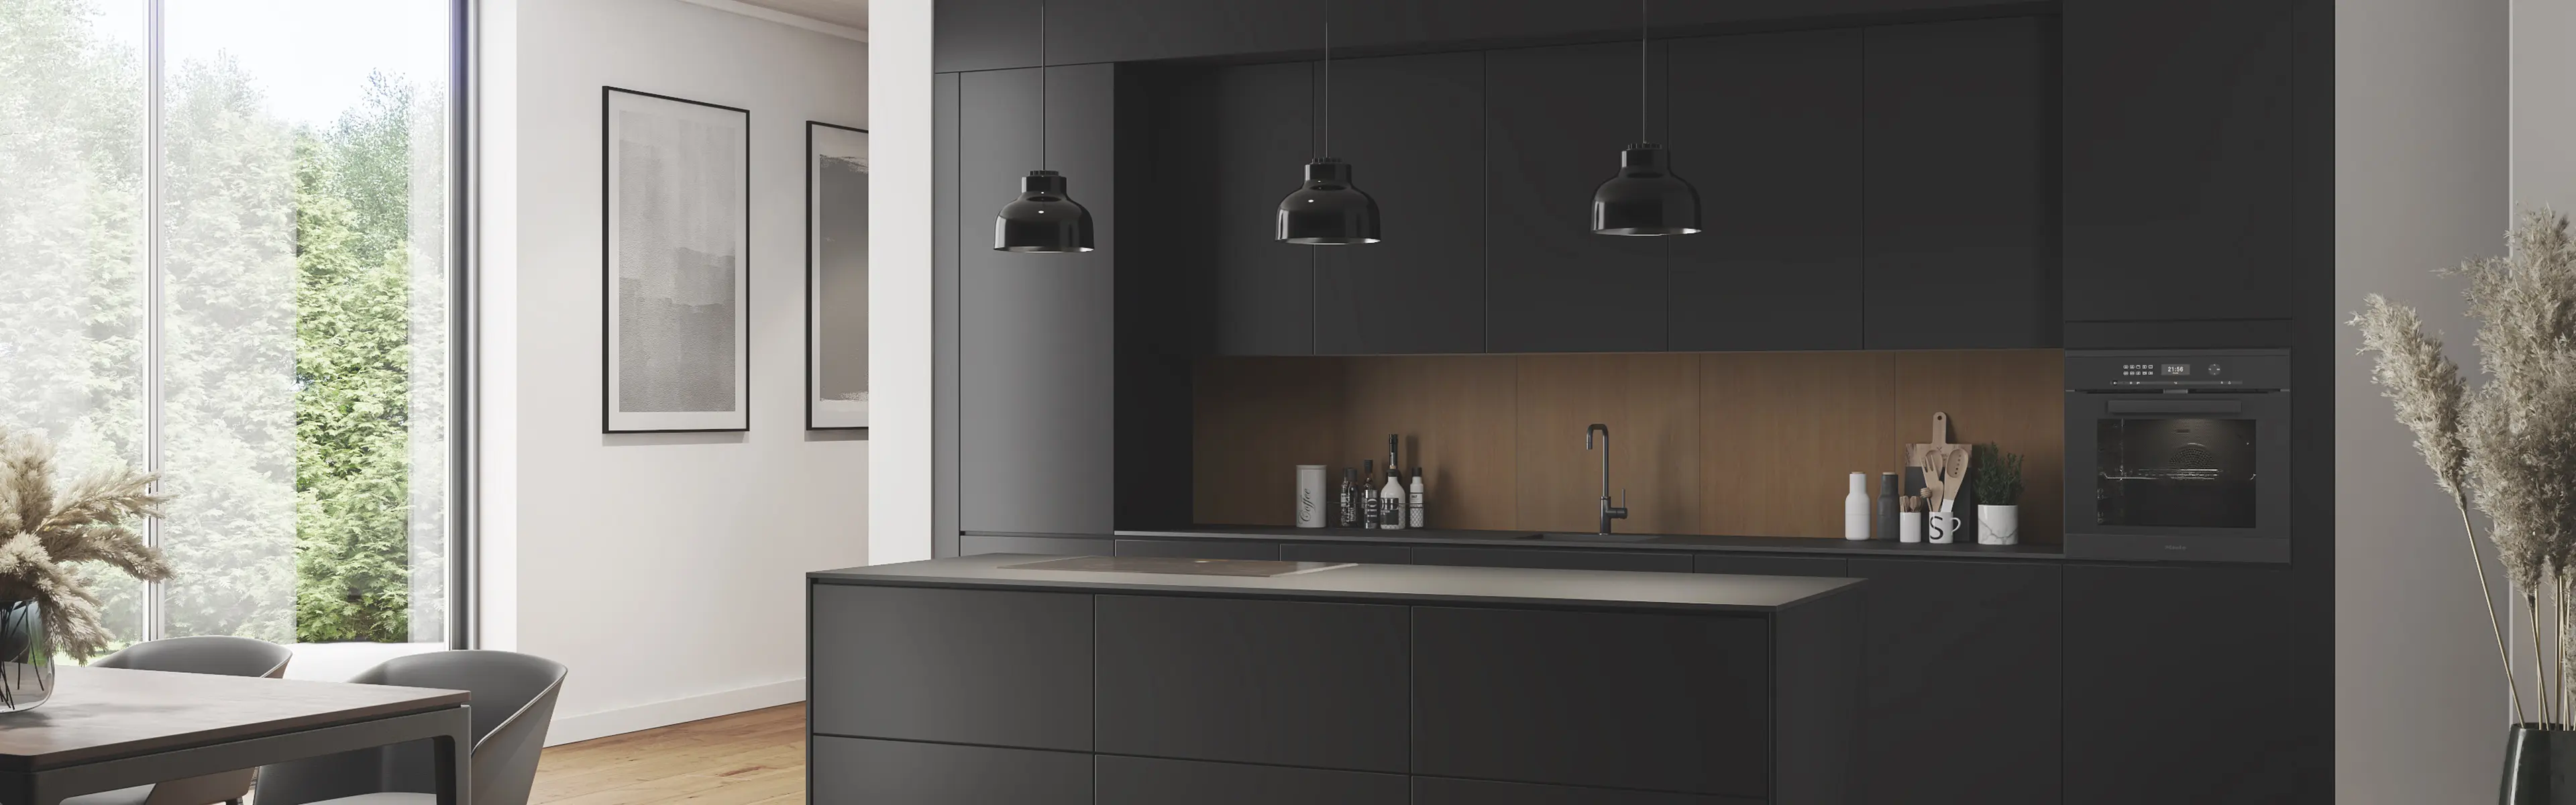 Nytt kjøkken med svart kjøkkeninnredning og kjøkkenplater i eik over kjøkkenbenken.